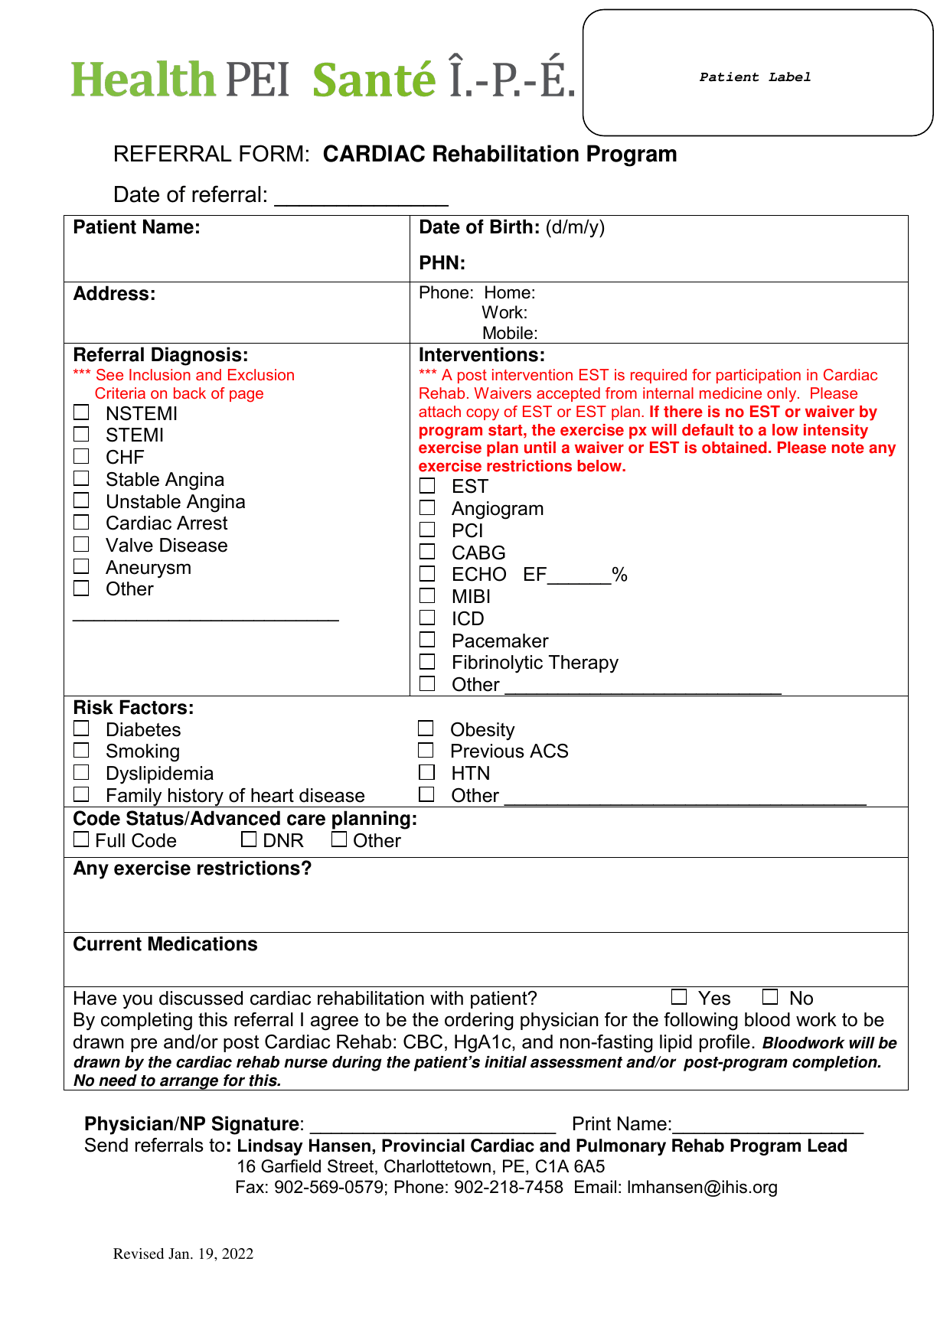 Referral Form: Cardiac Rehabilitation Program - Prince Edward Island, Canada, Page 1